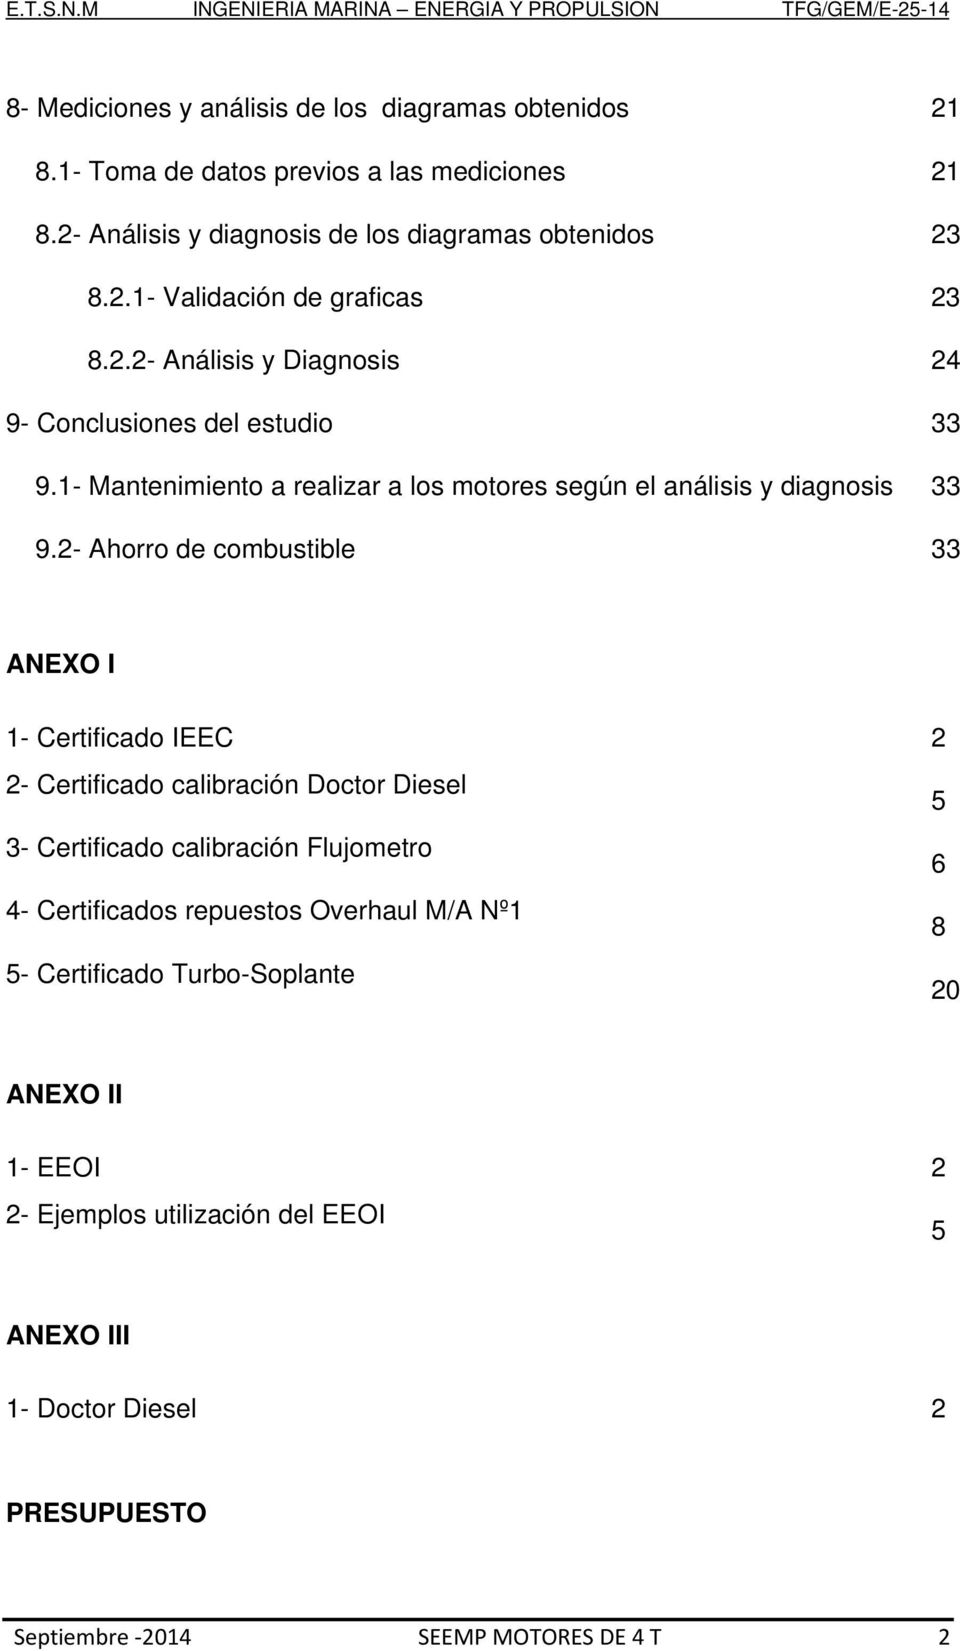 2- Ahorro de combustible 33 ANEXO I 1- Certificado IEEC 2 2- Certificado calibración Doctor Diesel 5 3- Certificado calibración Flujometro 6 4- Certificados repuestos